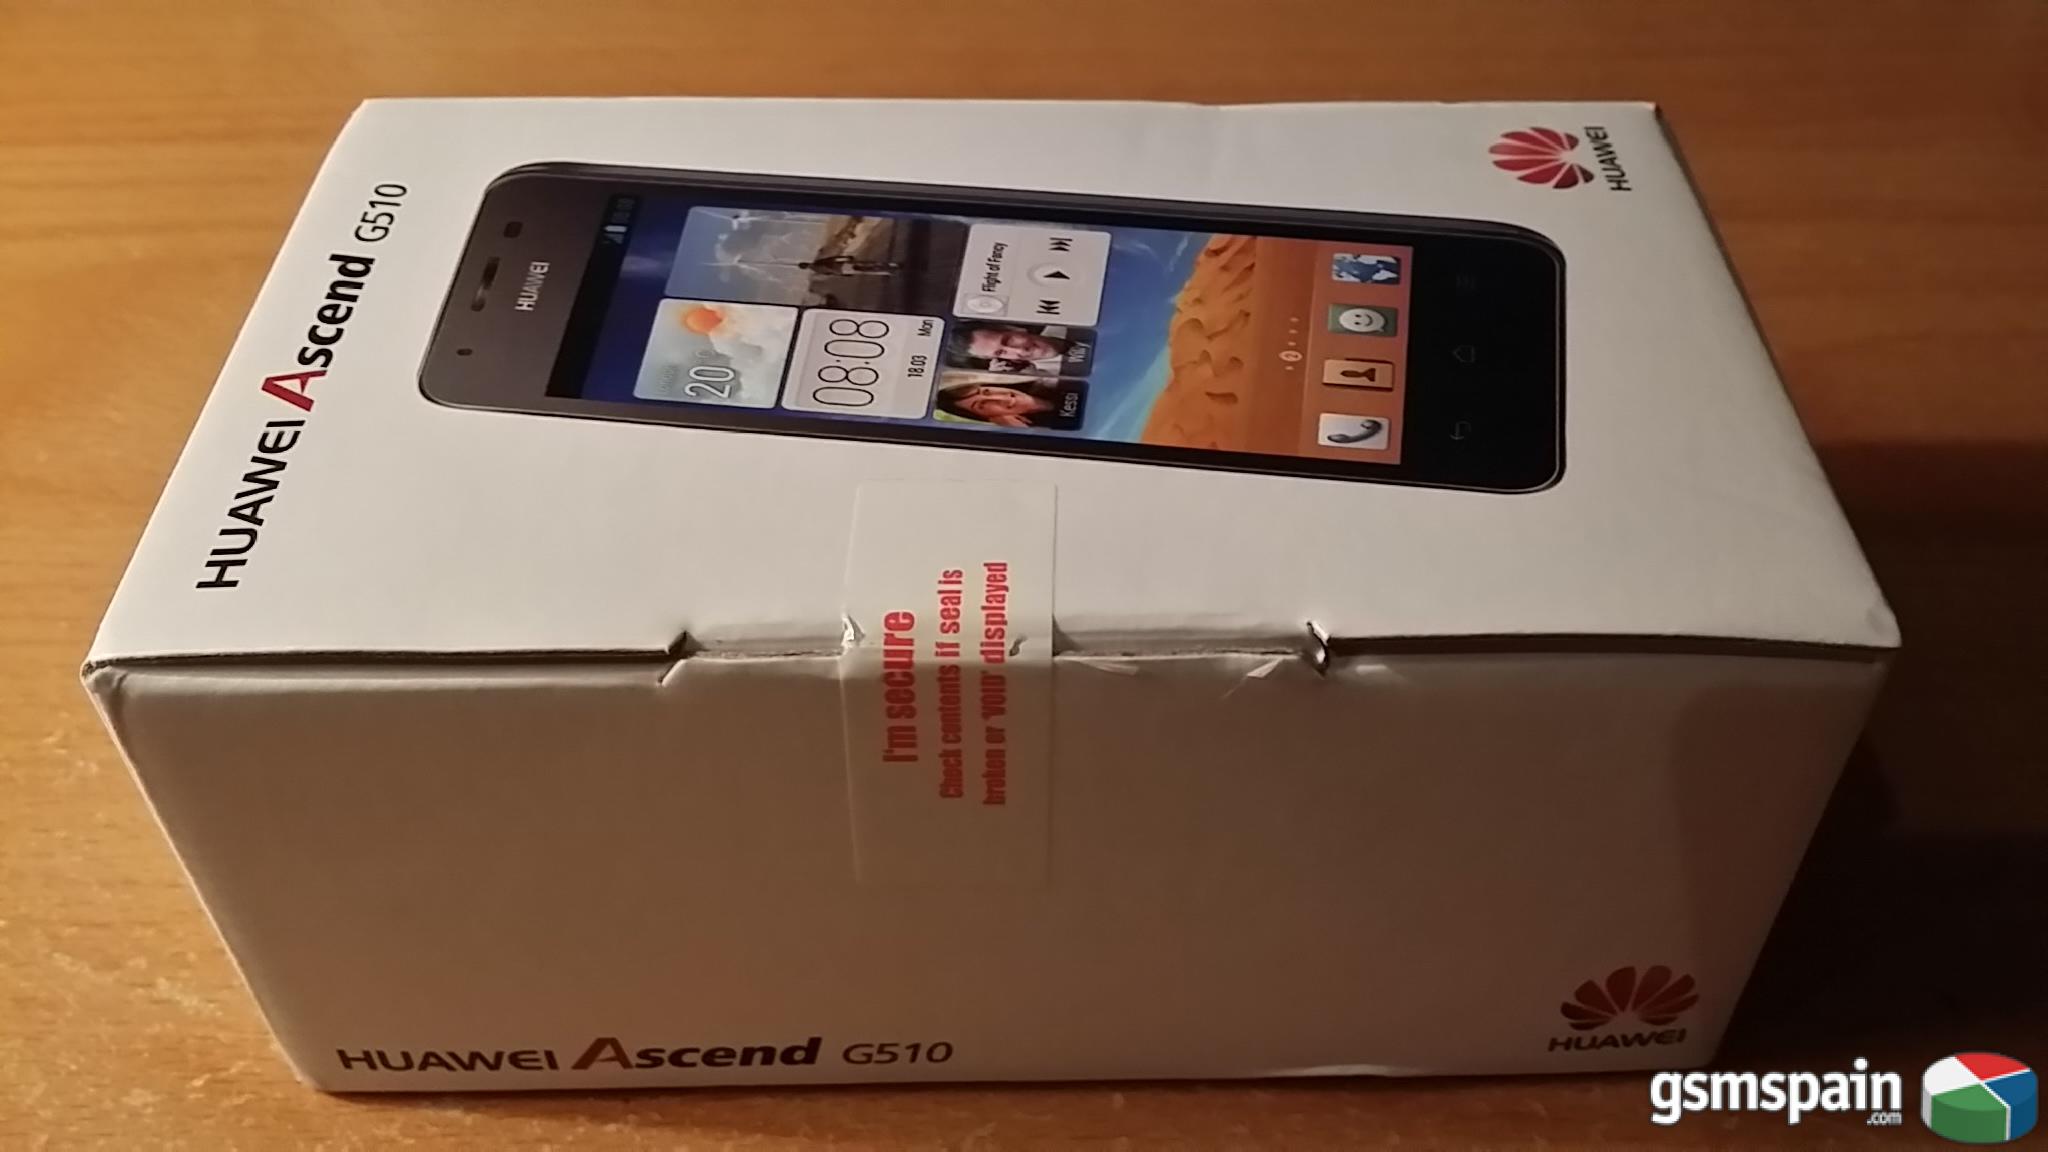 [VENDO] Huawei Ascend G-510-0100 Blanco Precintado Nuevo Original Vodafone LIBRE 100